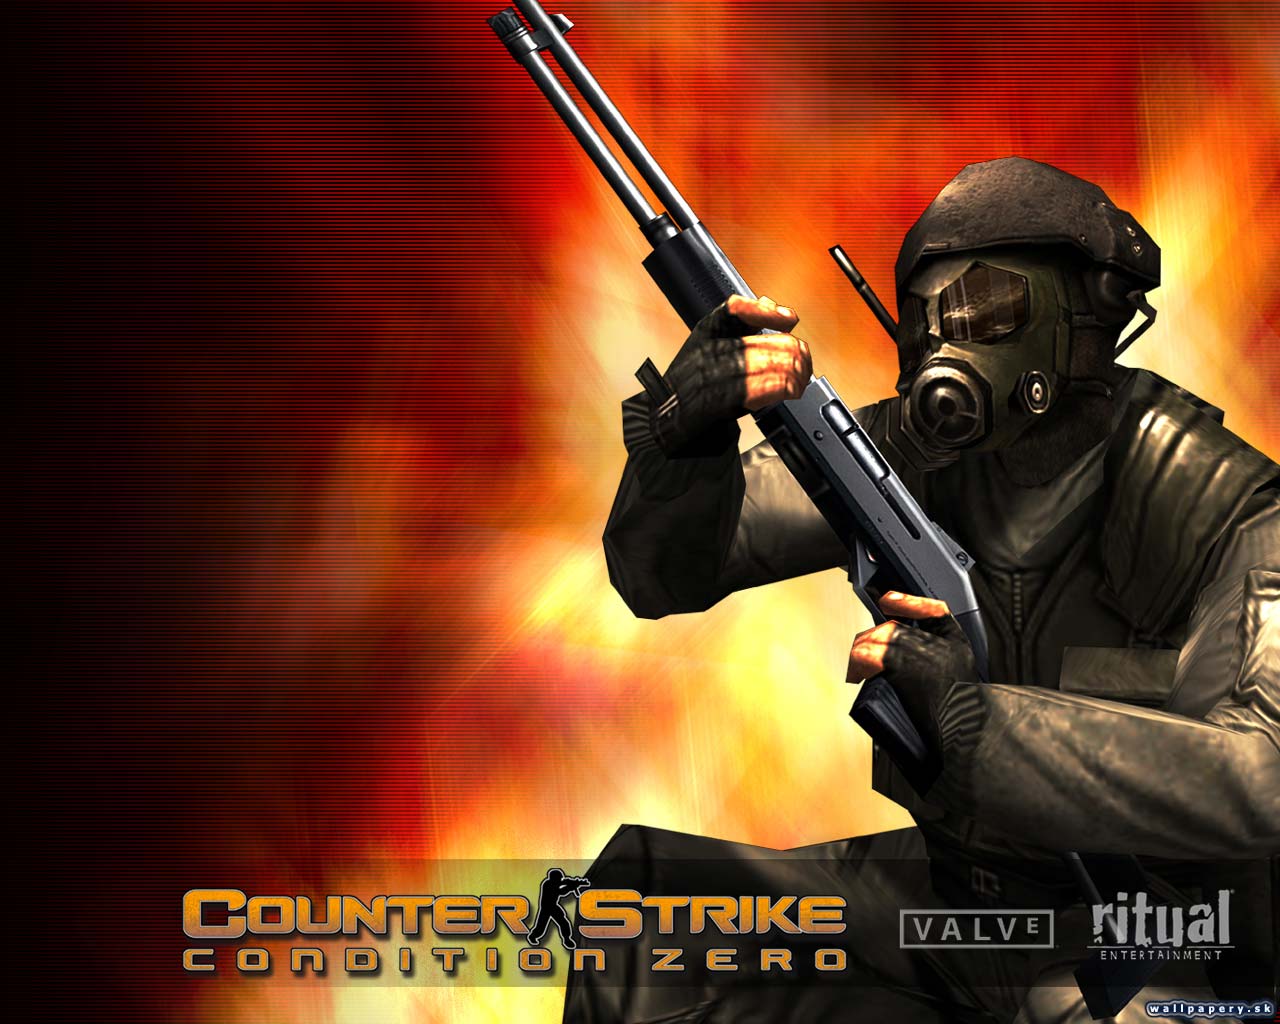 Картинки контр страйк. Counter-Strike, Counter-Strike: condition Zero. Counter Strike фото. Counter Strike иллюстрации. Counter Strike 1.6.